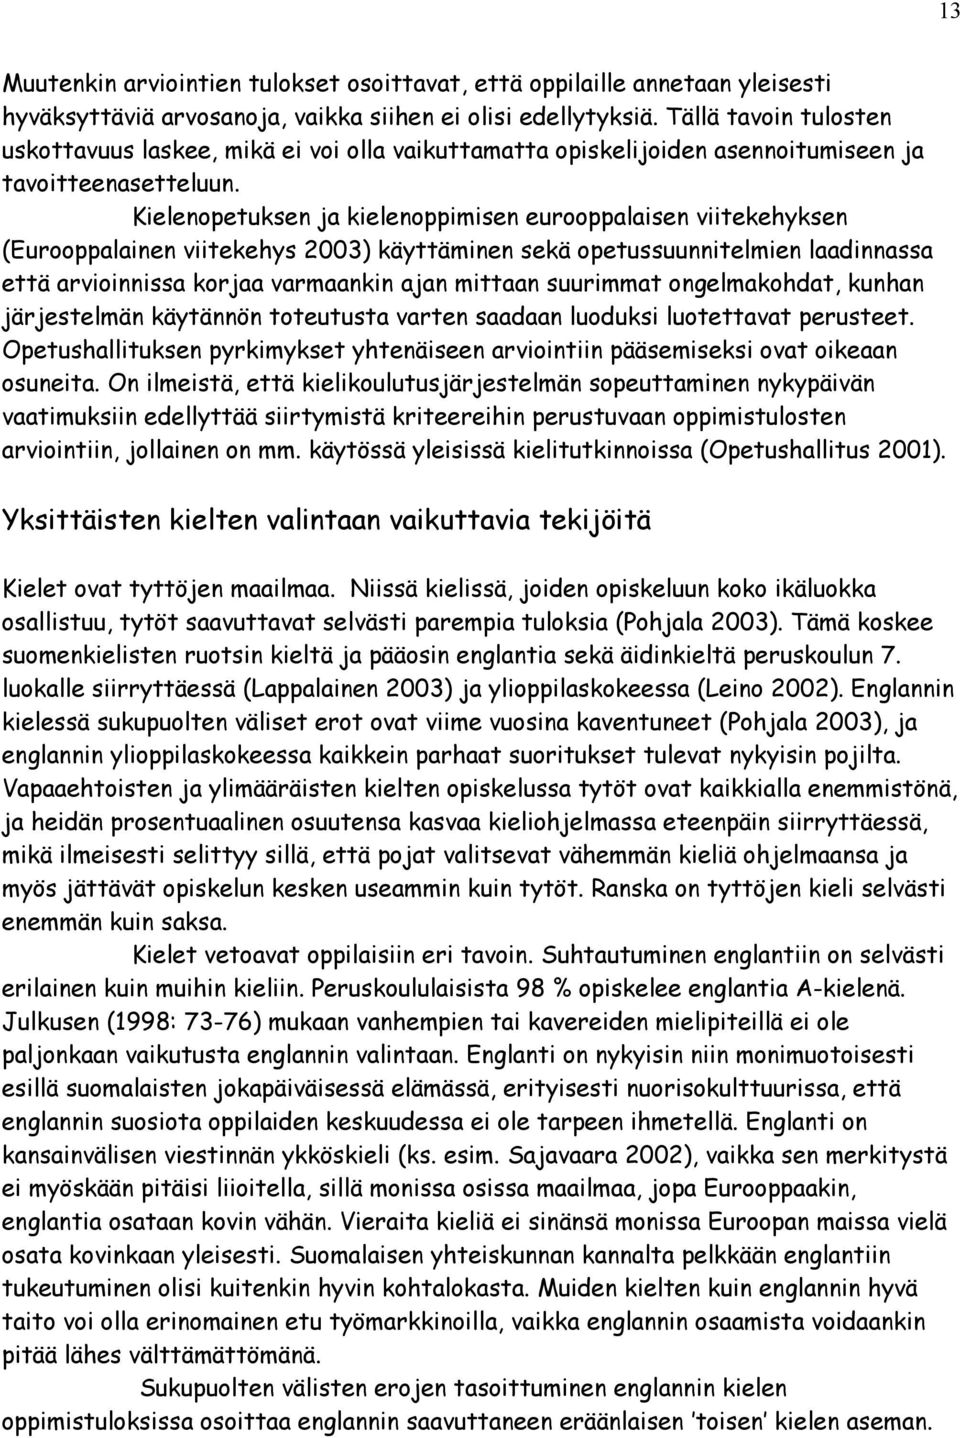 Kielenopetuksen ja kielenoppimisen eurooppalaisen viitekehyksen (Eurooppalainen viitekehys 2003) käyttäminen sekä opetussuunnitelmien laadinnassa että arvioinnissa korjaa varmaankin ajan mittaan